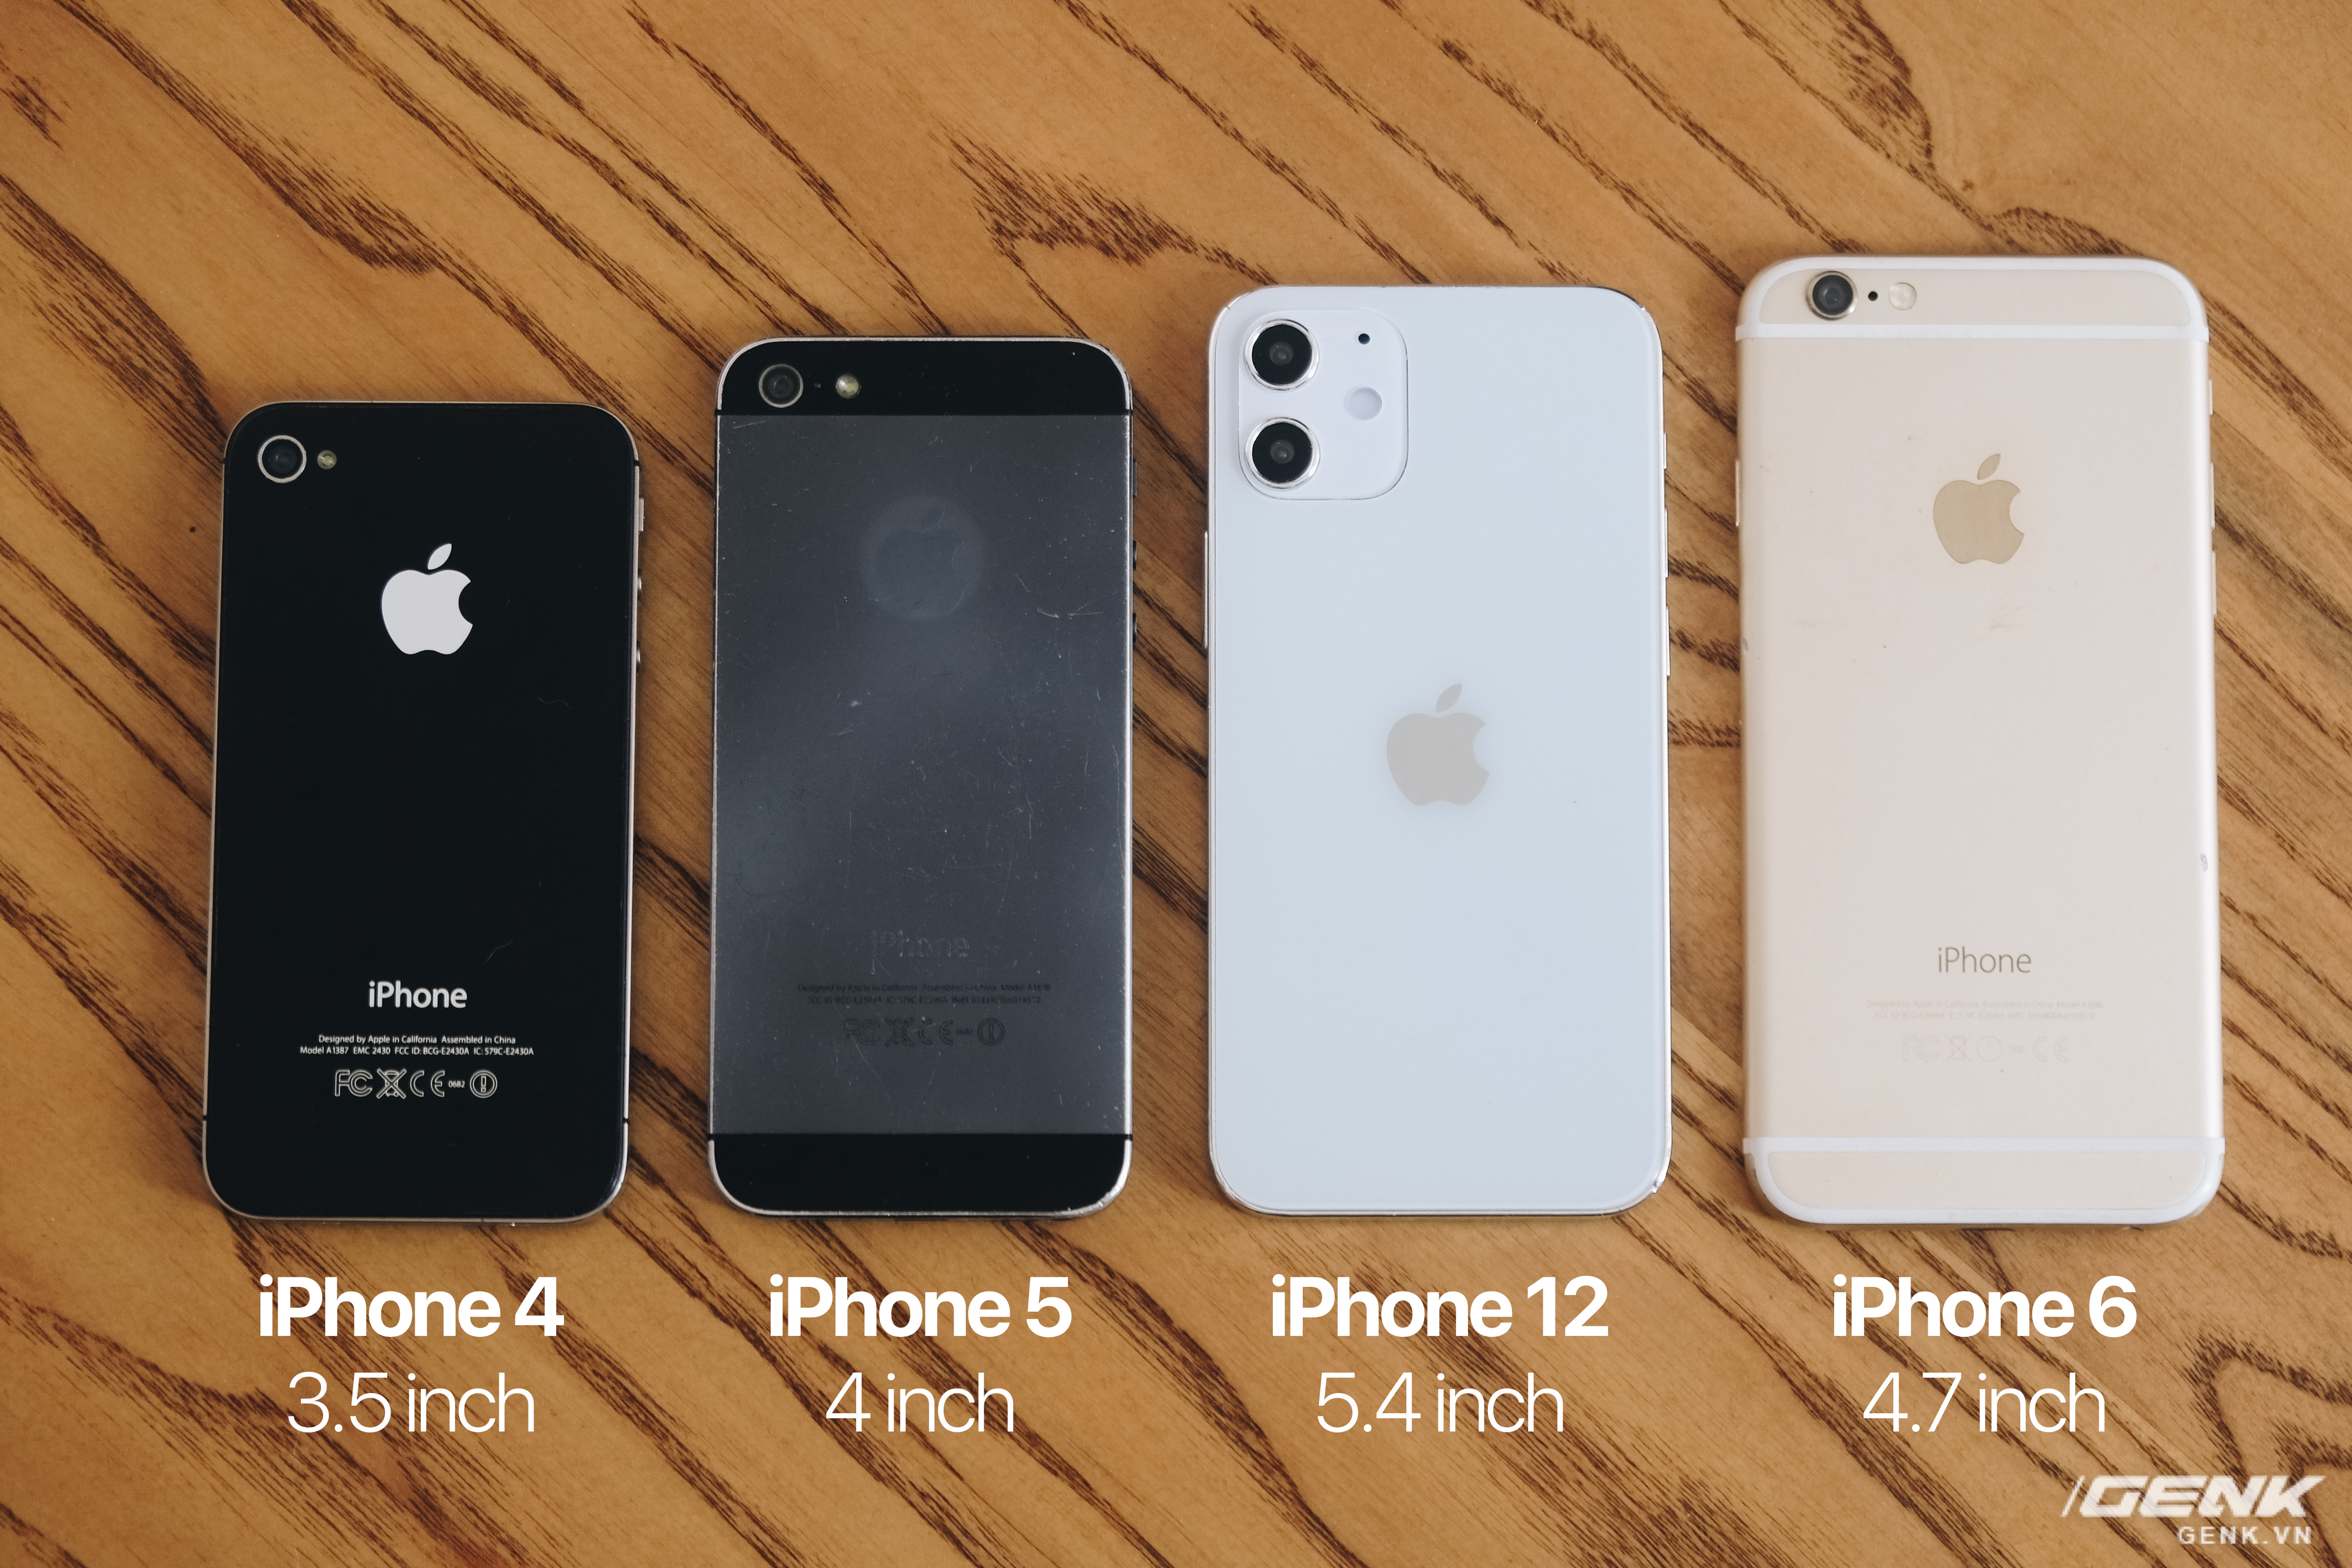 iPhone 12 5.4 inch: Với iPhone 12 5.4 inch, bạn sẽ thấy một thiết kế thiết thực với cảm giác nhẹ nhàng và nhỏ gọn trong tay. Màn hình OLED nổi bật với độ phân giải cao và màu sắc tuyệt đẹp. Điện thoại này sẽ là sự lựa chọn hoàn hảo cho những ai thích sự tiện lợi và di động.